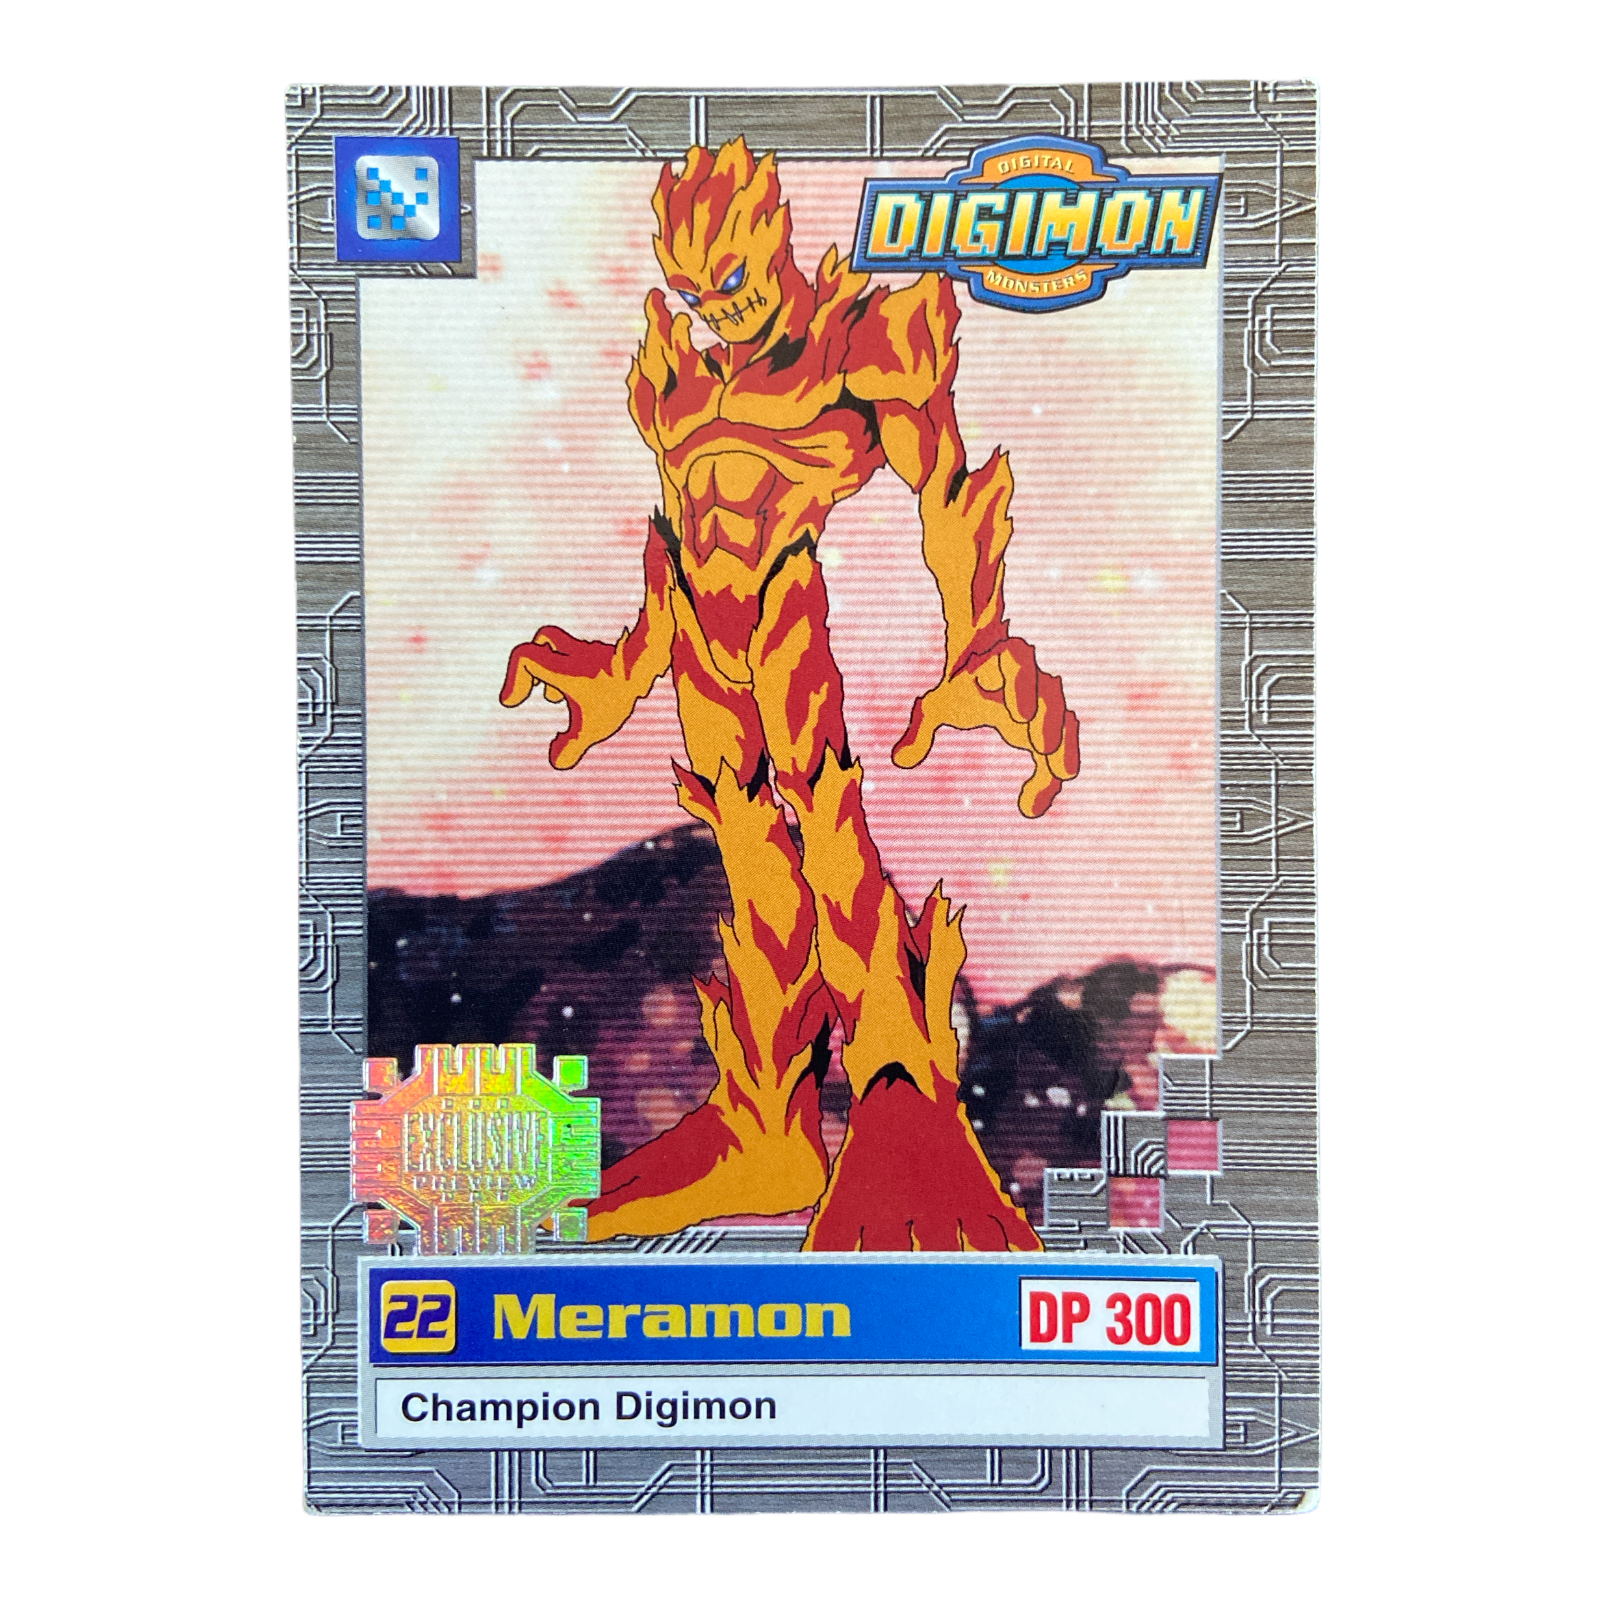 Meramon #22 0- 24/34 (Exclusive) - Digimon